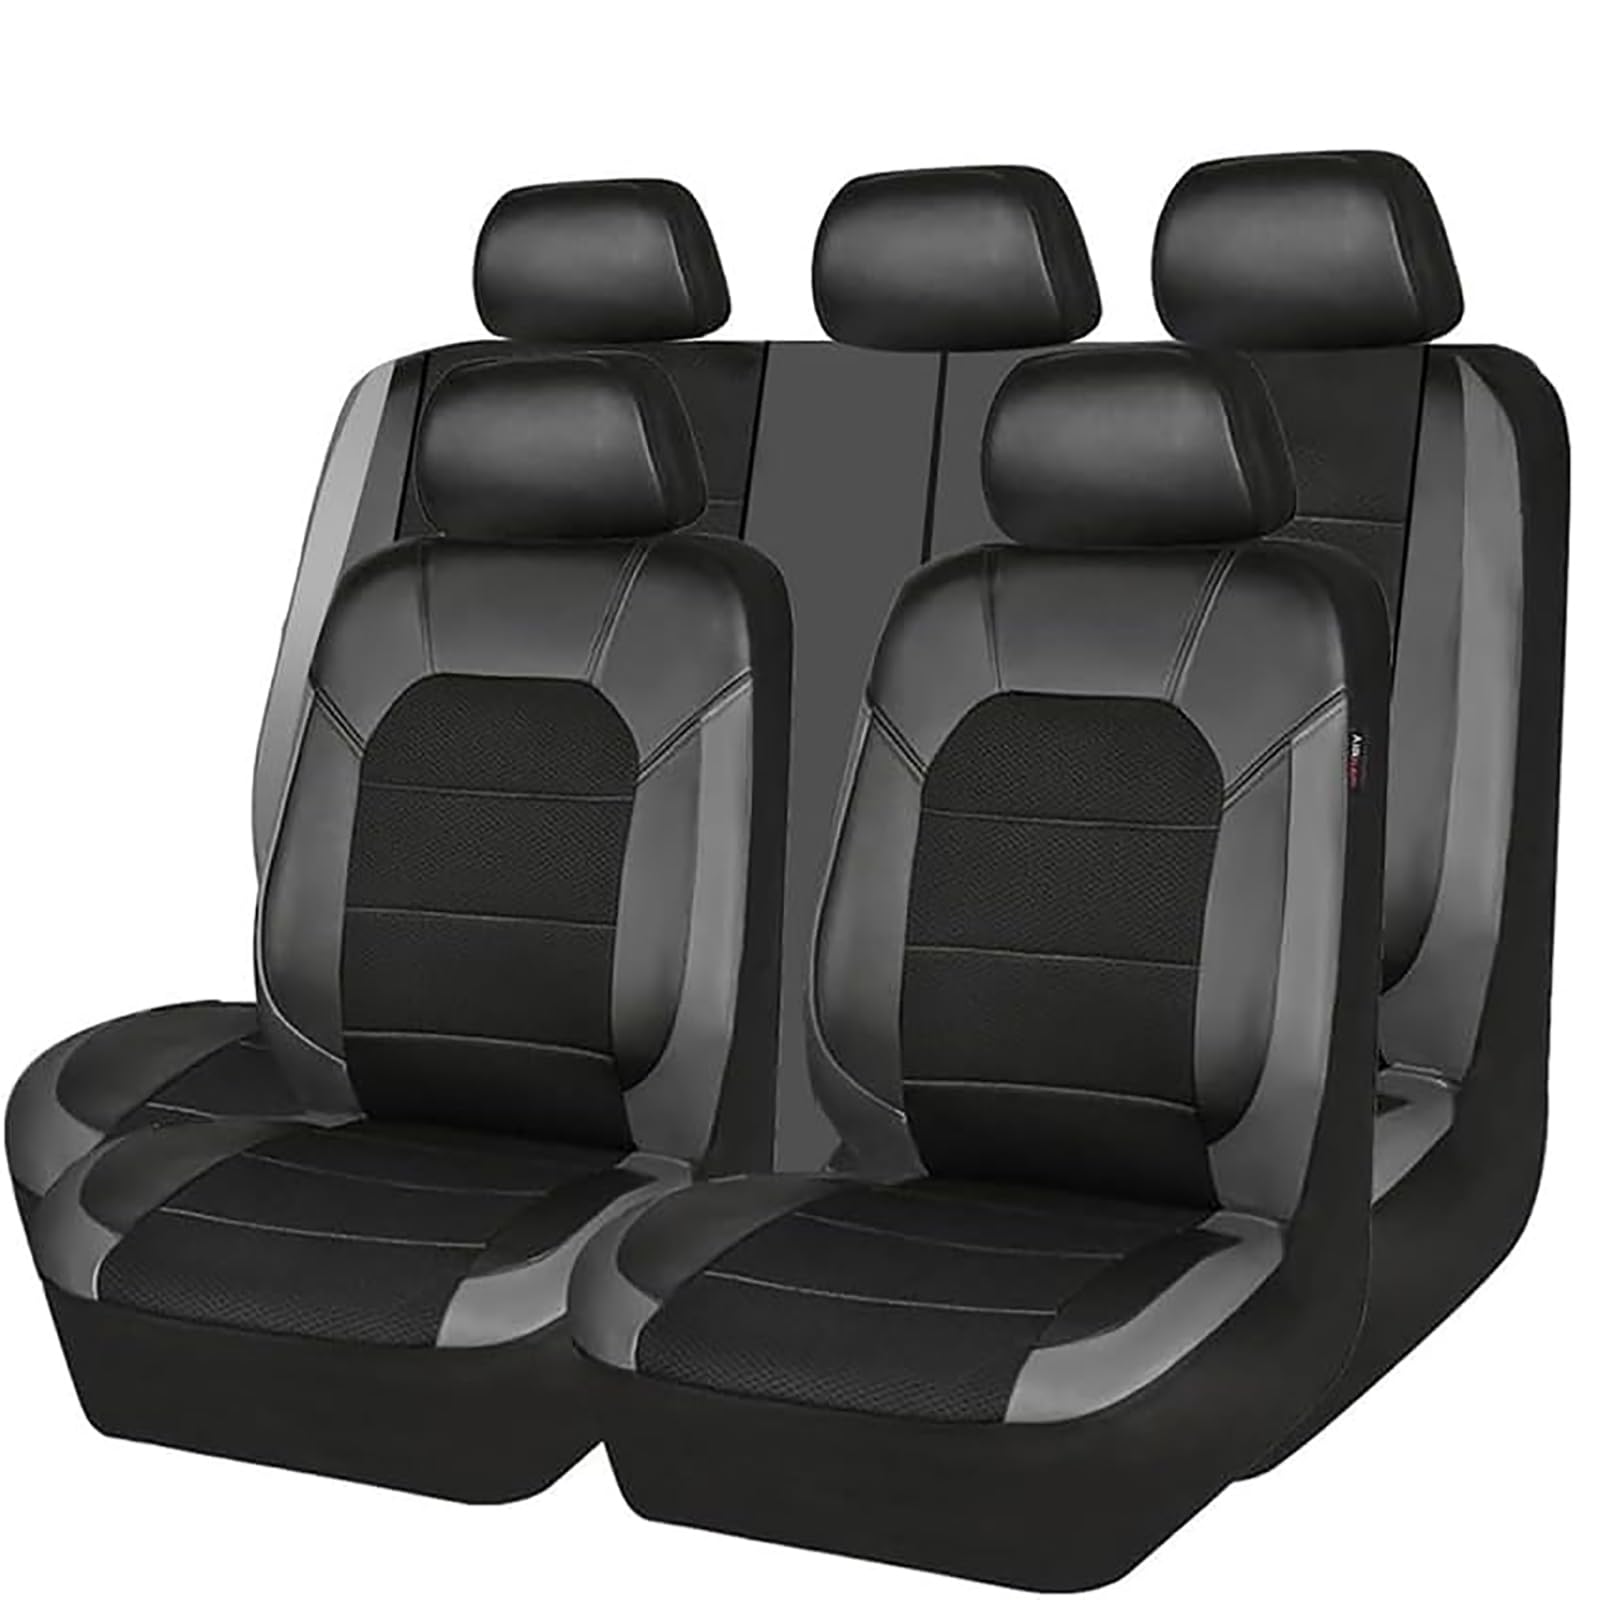 EYHQKRTR Auto Leder Sitzkissen Für Mercedes GLA SUV 2020-2023, 5 Sitzer Full Set SitzbezüGe Schonbezug Vorne Rückbank Sitzschutz Compatible Airbag Innenraum Zubehör,B/Grey von EYHQKRTR